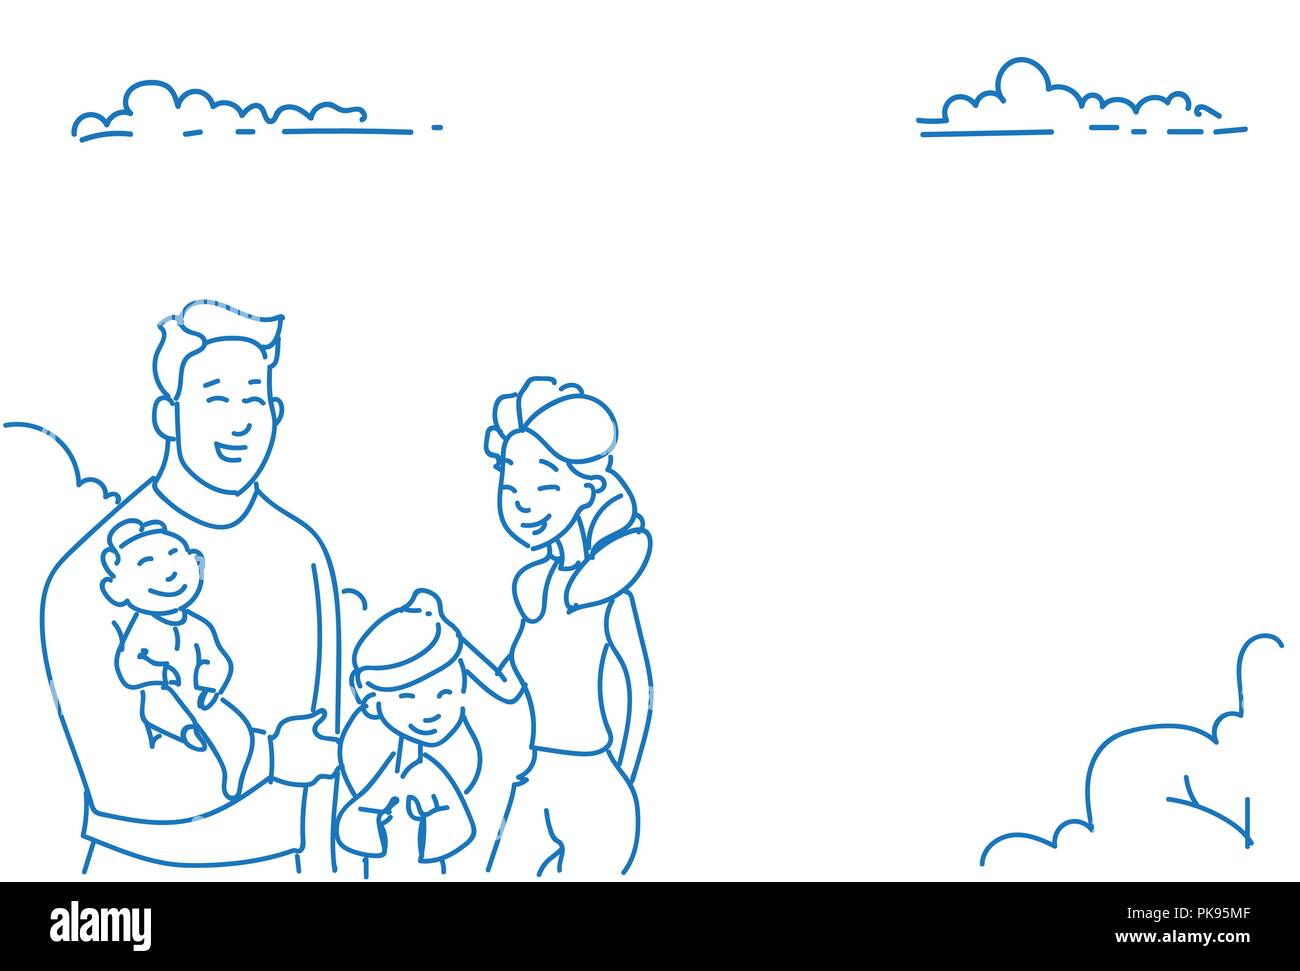 Padre madre di due bambini baby figlio figlia happy family concept sketch doodle disegnato a mano orizzontale verticale Illustrazione Vettoriale